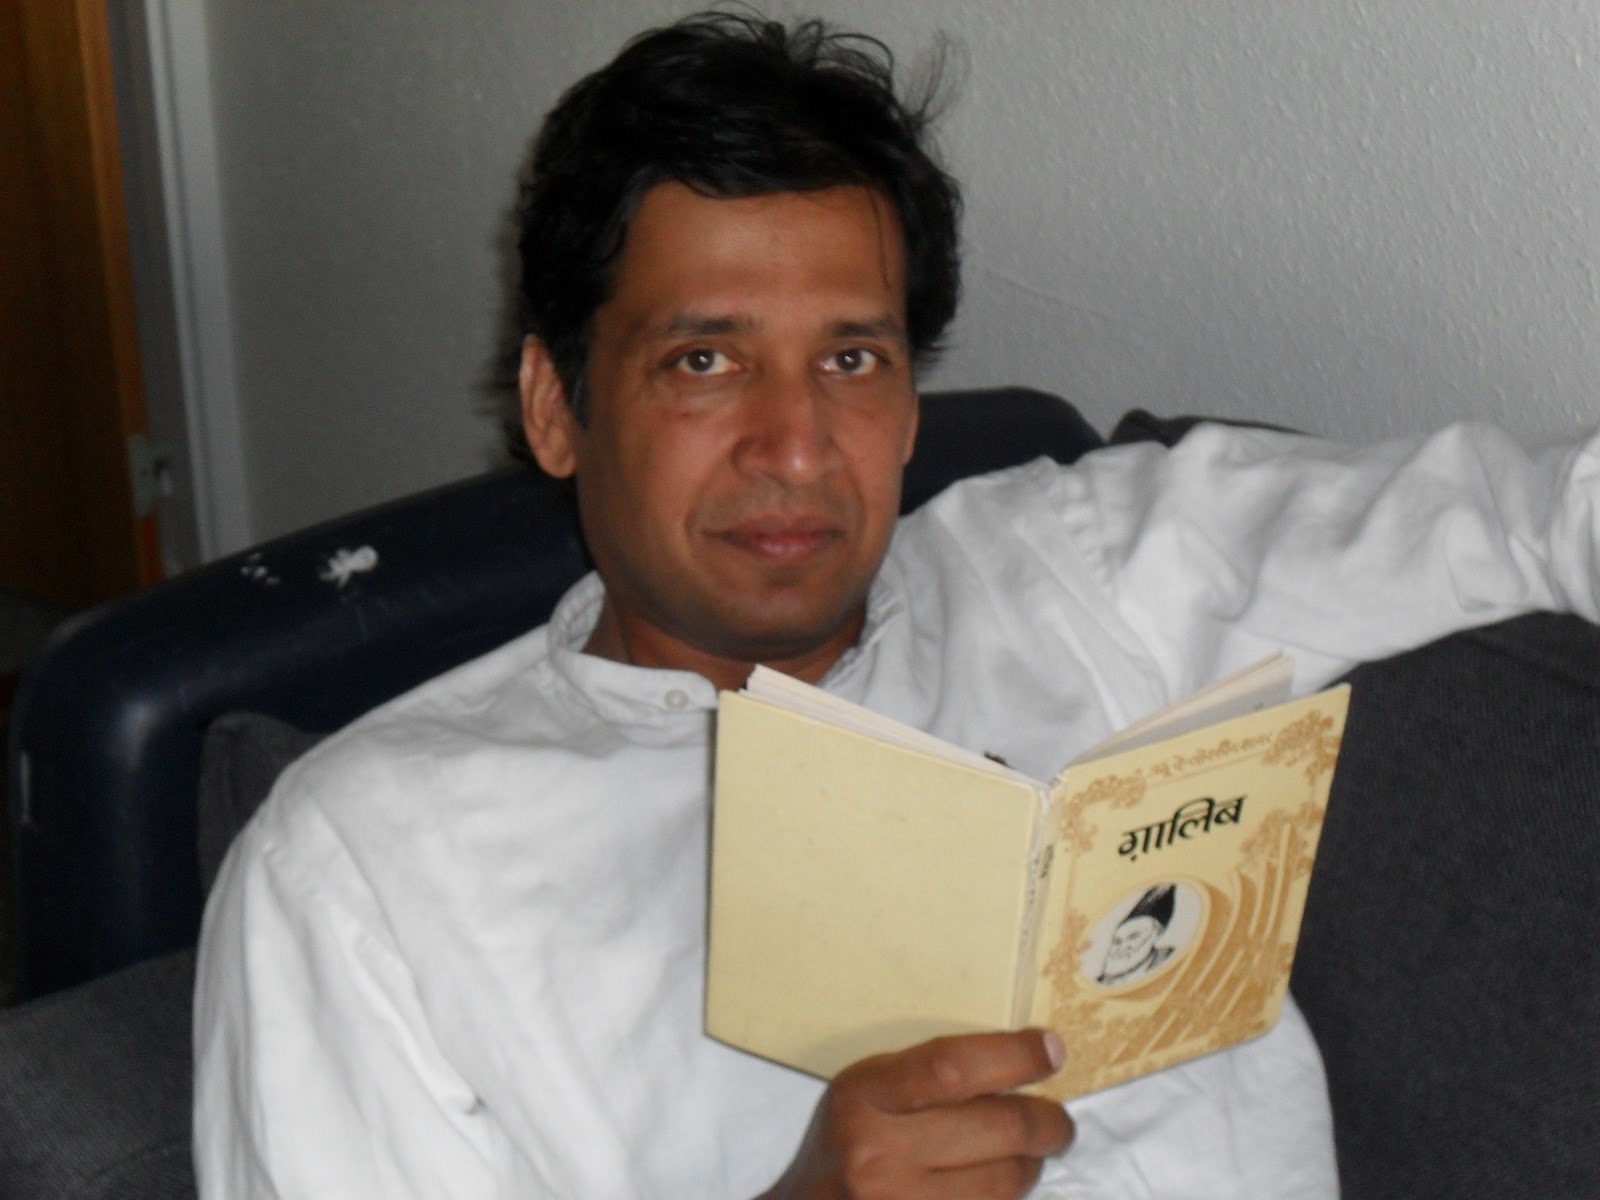 Award winning India author writing family epic